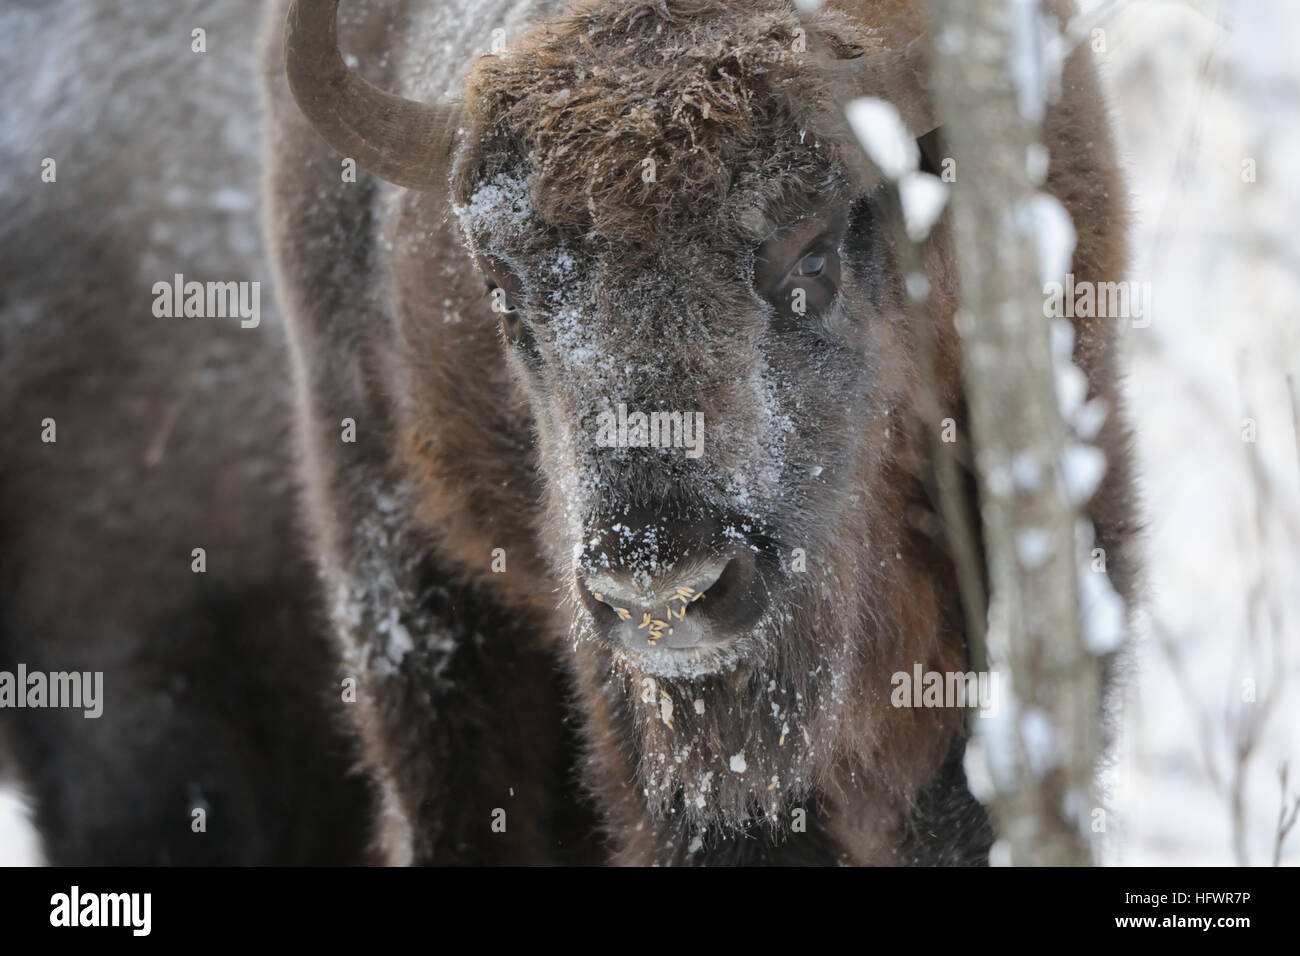 Bison d'Europe (bison, Bison bonasus) dans la forêt d'hiver. Parc national de la région de Kalouga, Ugra, la Russie. Décembre, 2016 Banque D'Images